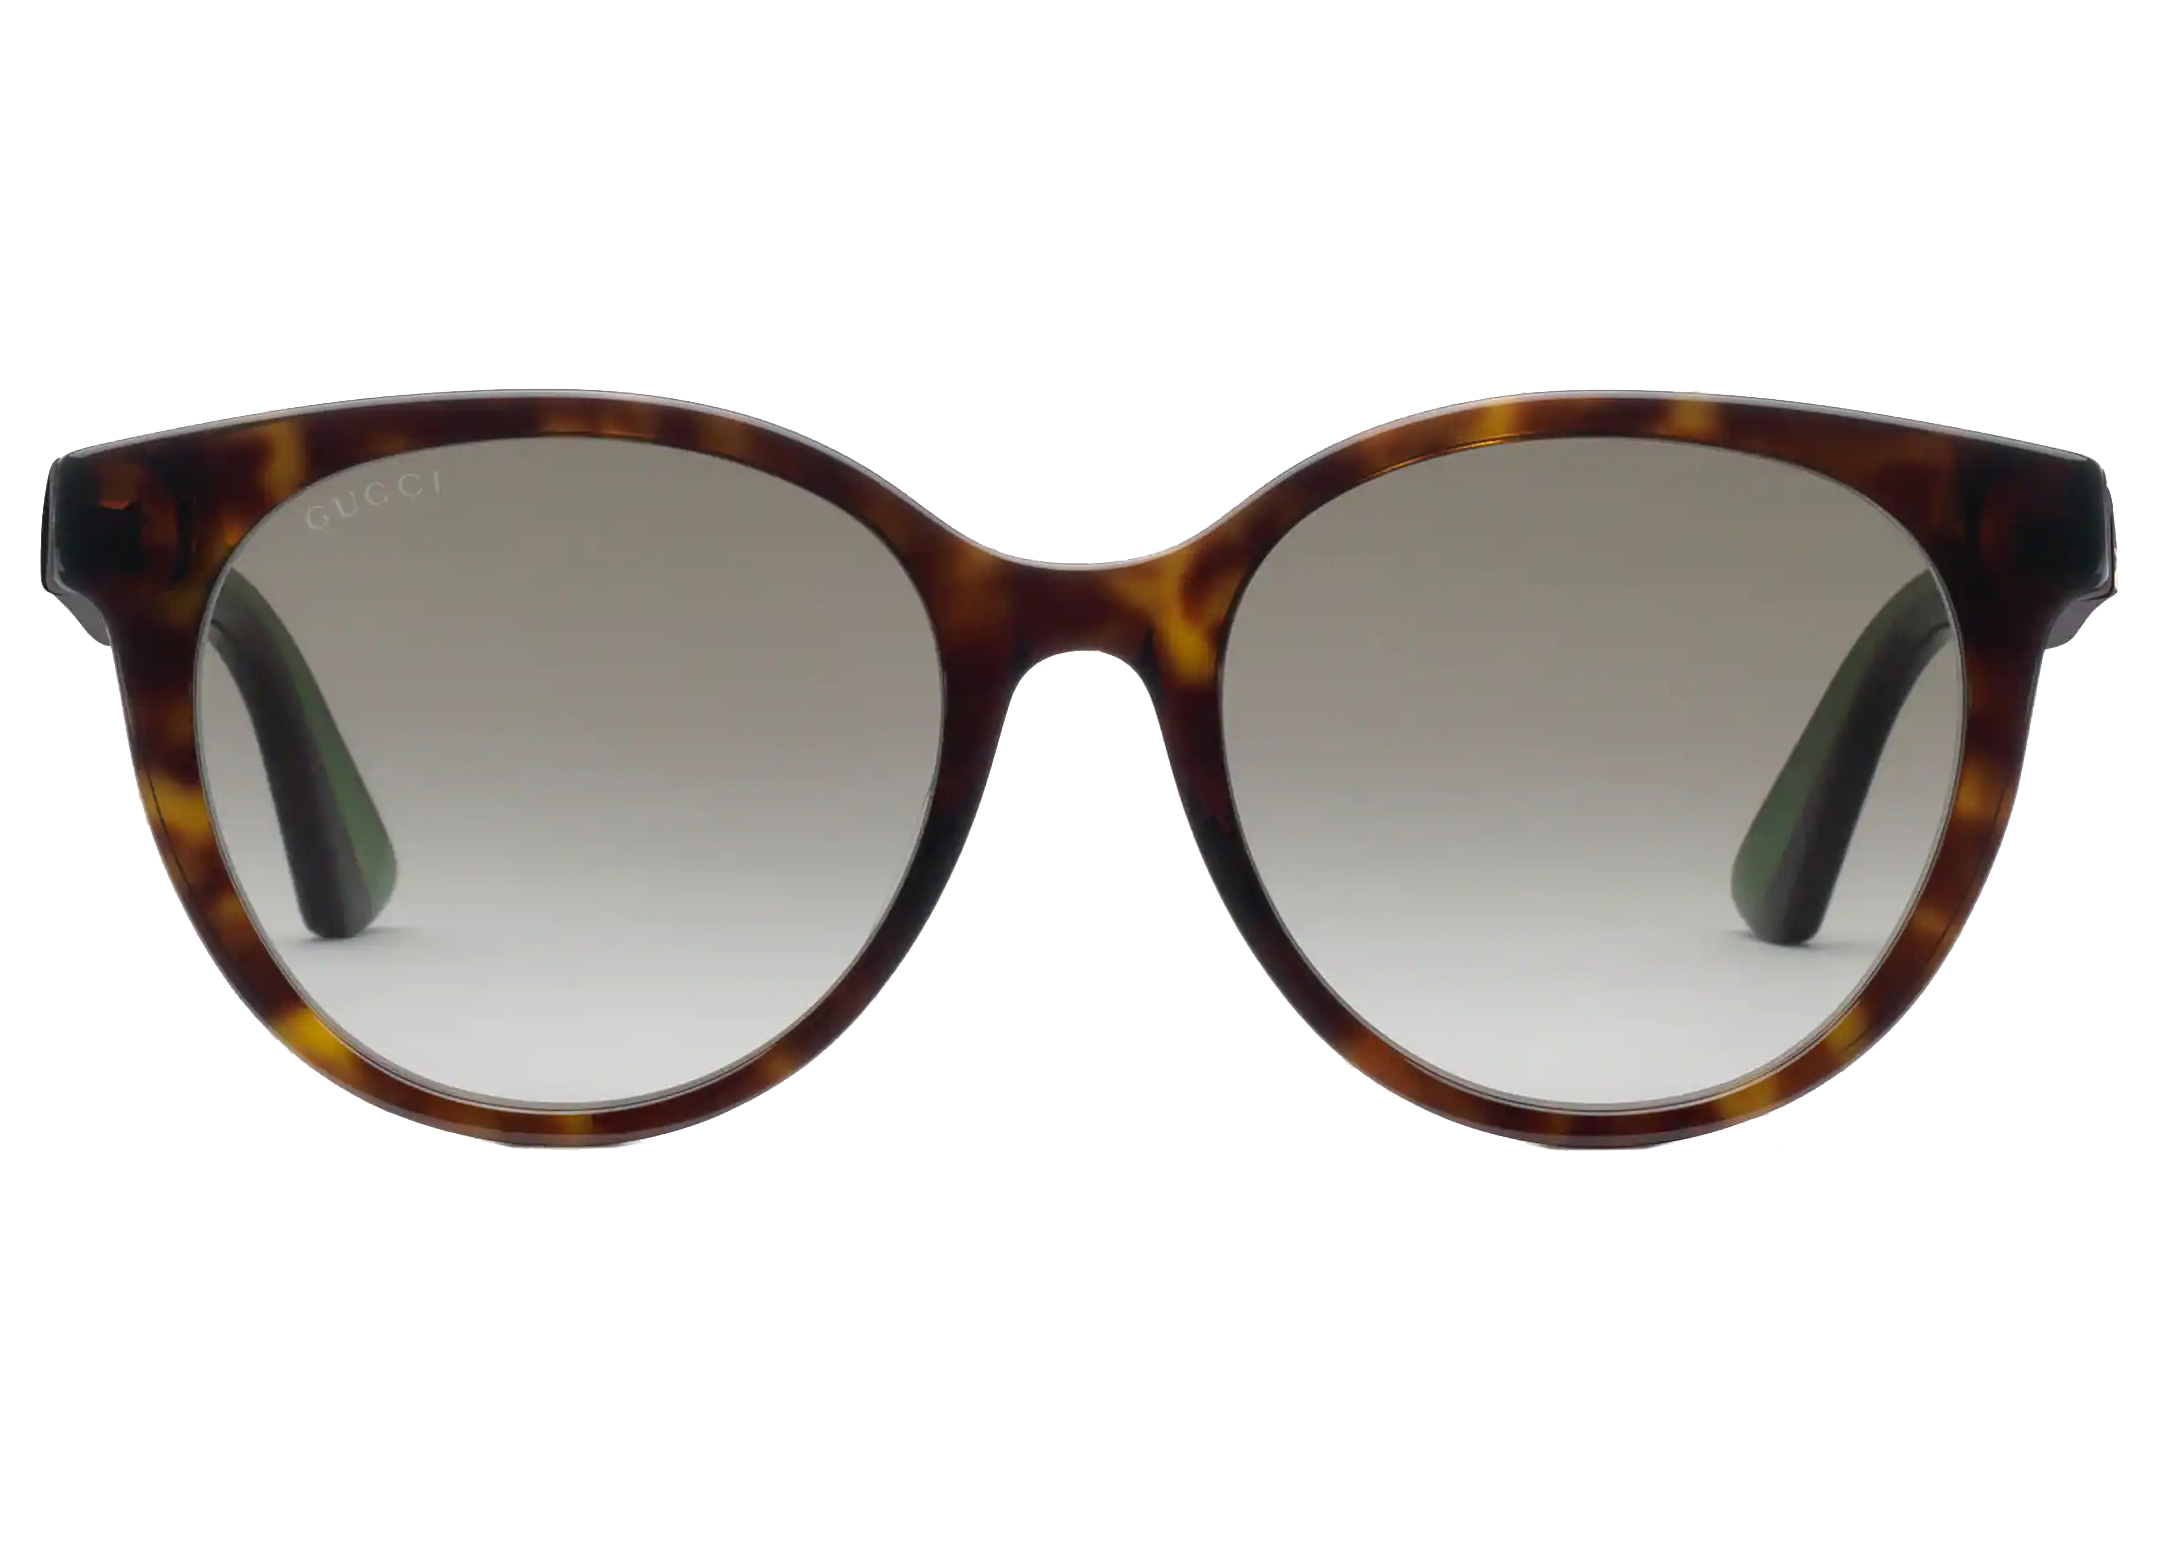 Gucci Round Frame Sunglasses Tortoiseshell/Green